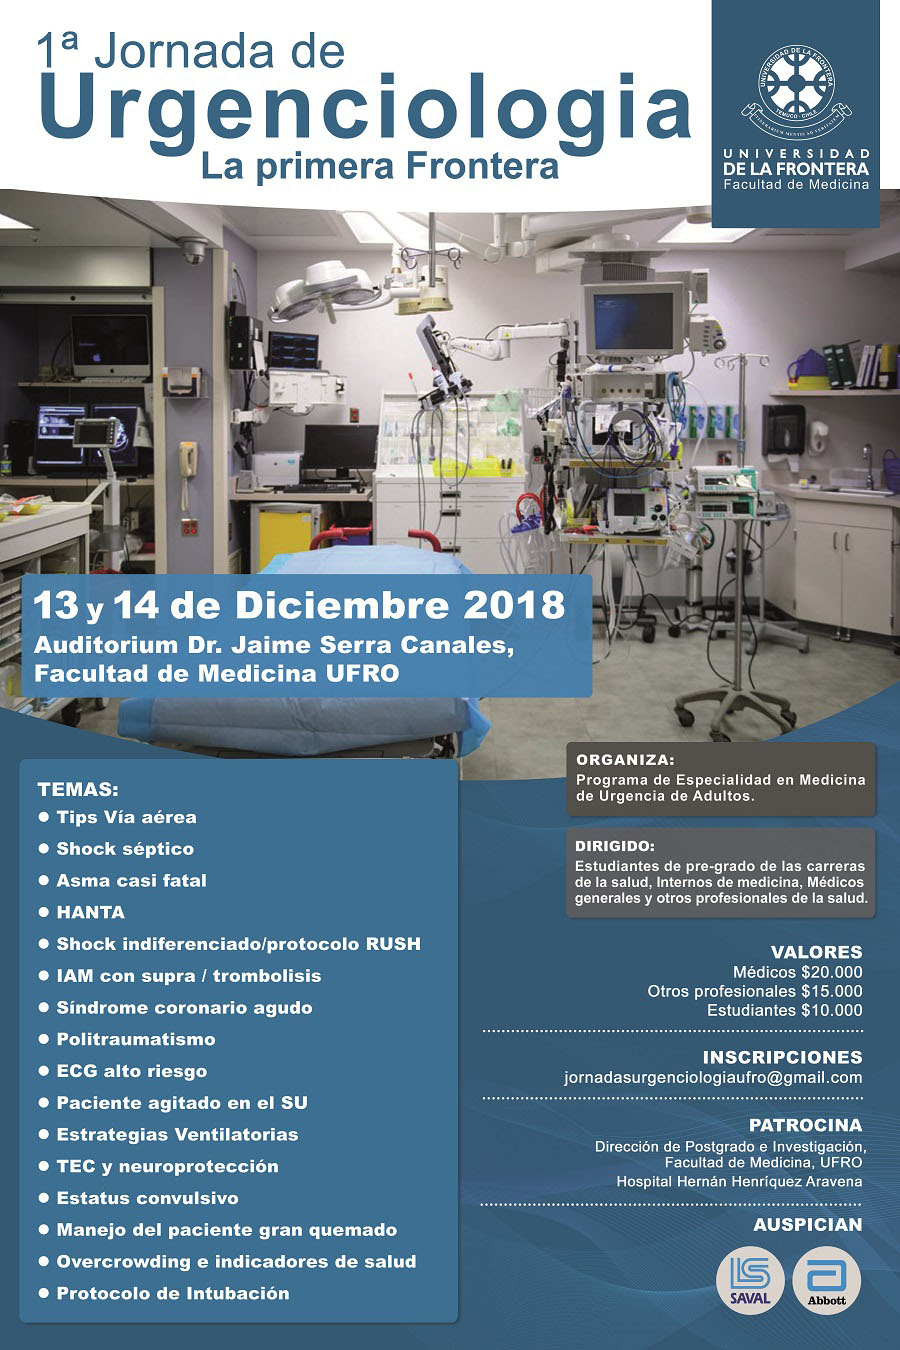 II Jornada de Urgenciología 2019